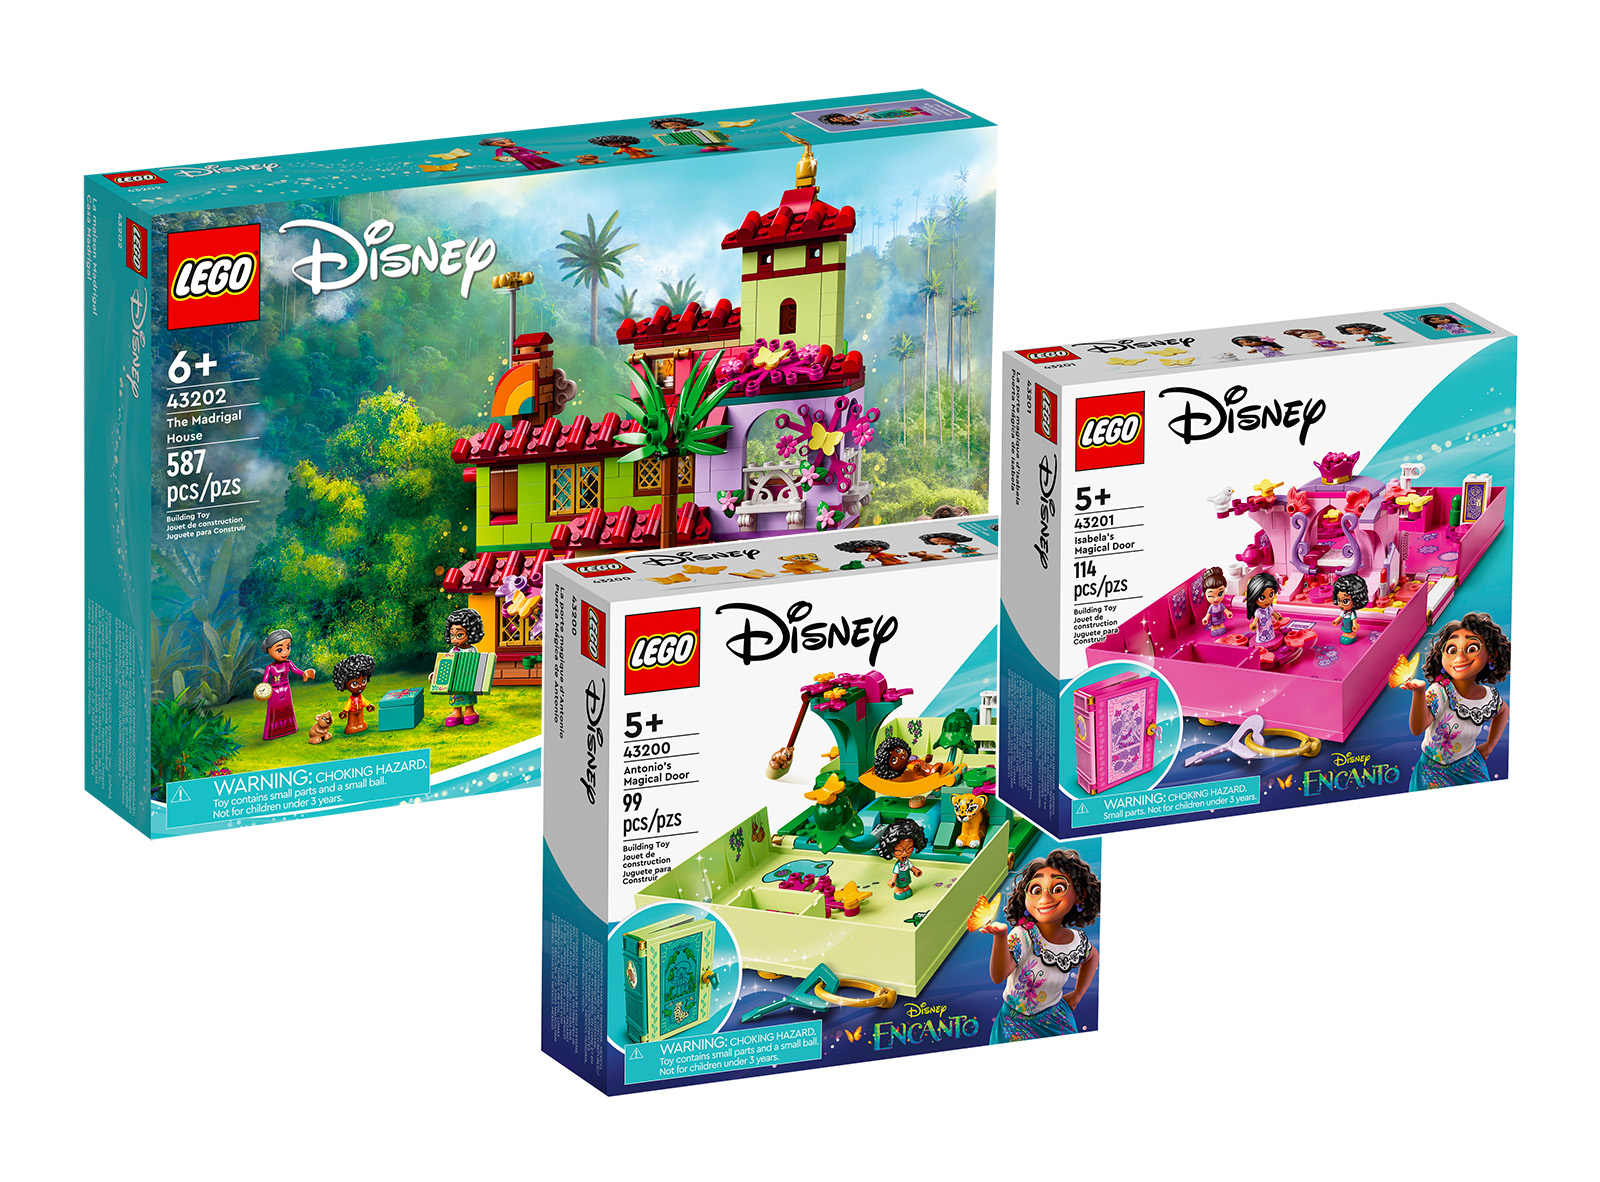 ▻ Nuovo LEGO Disney Encanto La fantastica famiglia Madrigal: prime immagini  - HOTH BRICKS